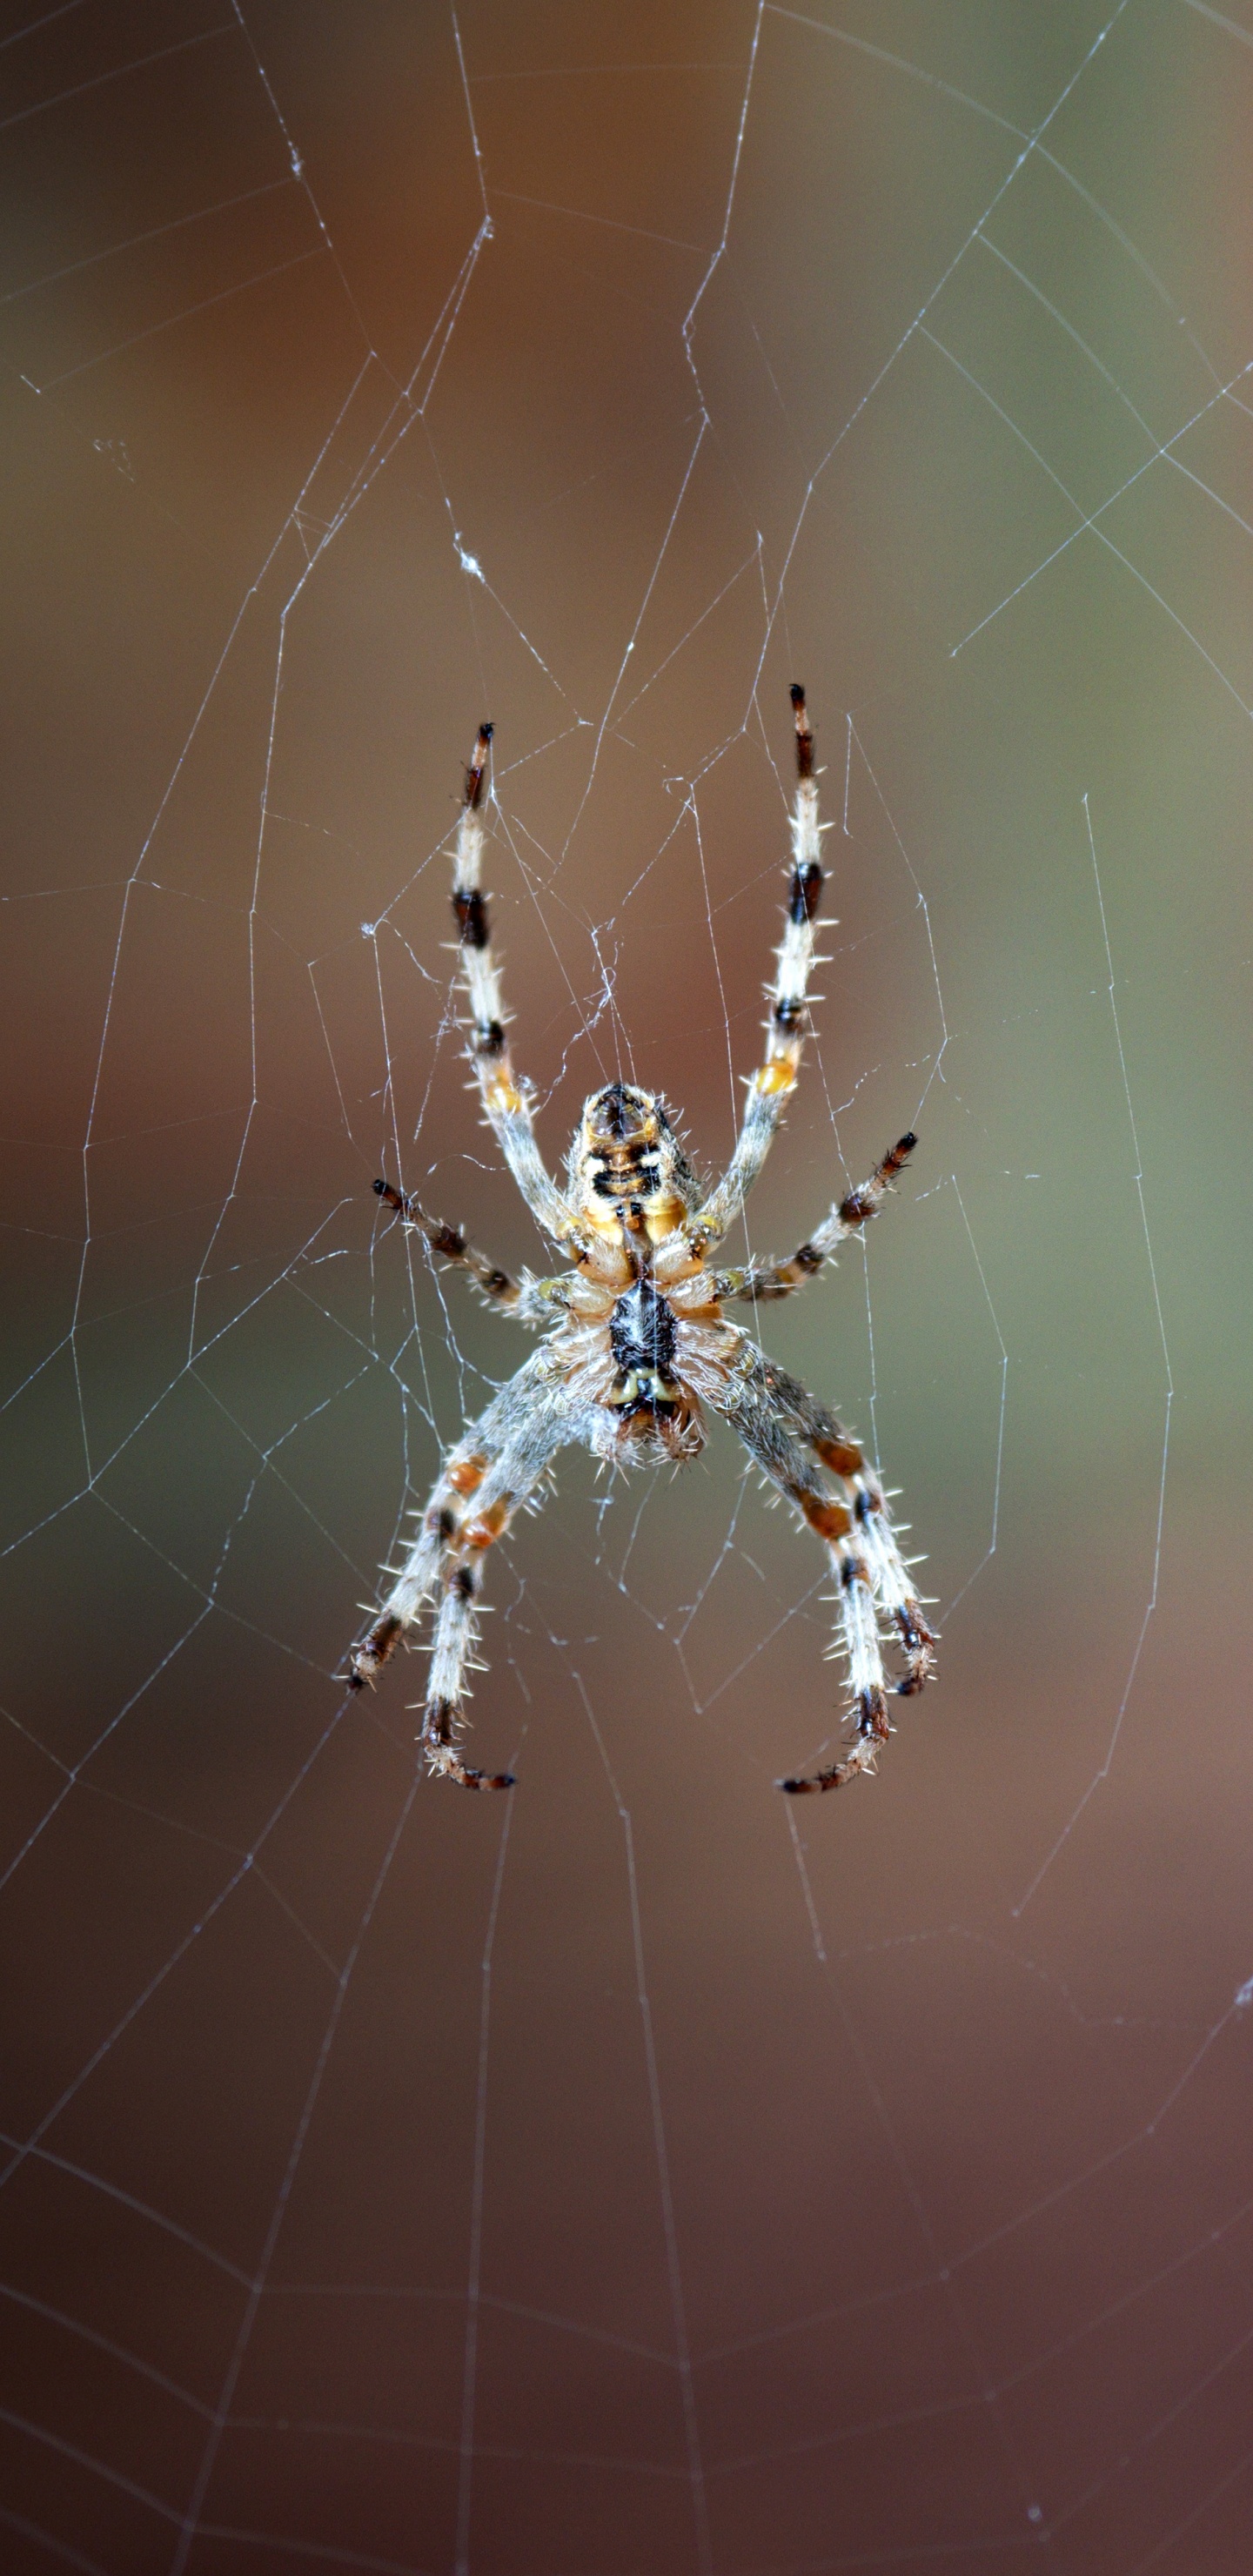 Araña Marrón y Negra en la Web en Fotografía de Cerca Durante el Día. Wallpaper in 1440x2960 Resolution